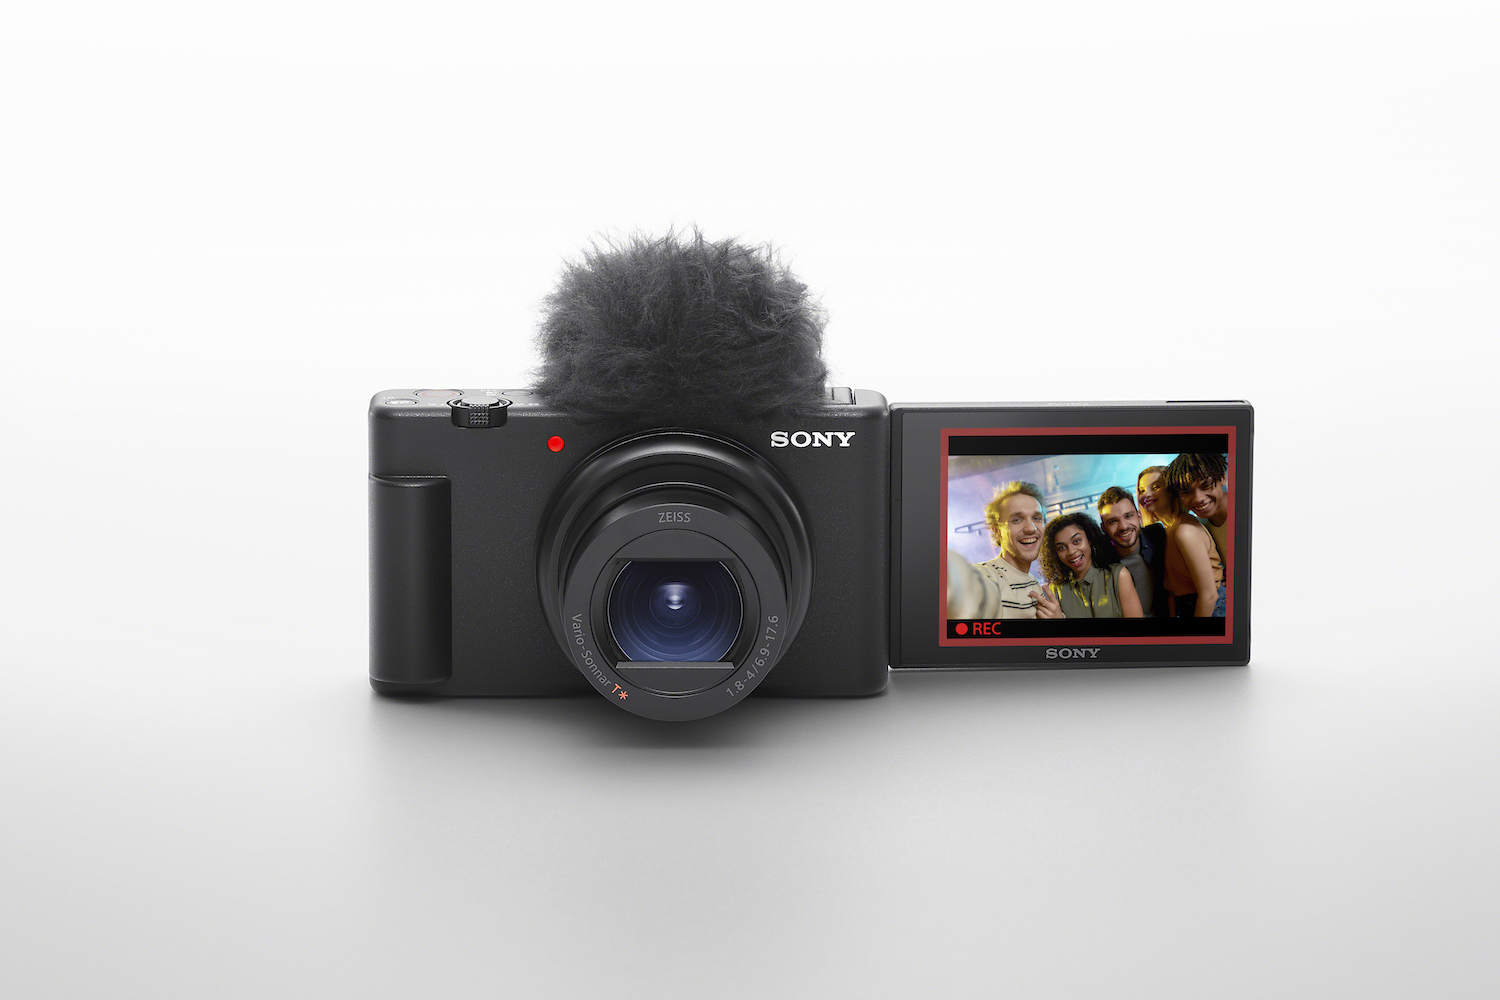 Cámara Vlog, cámara de grabación con micrófono Full HD, cámara digital  inteligente compacta y portátil para transmisión en vivo y disparos de  viaje (plata)